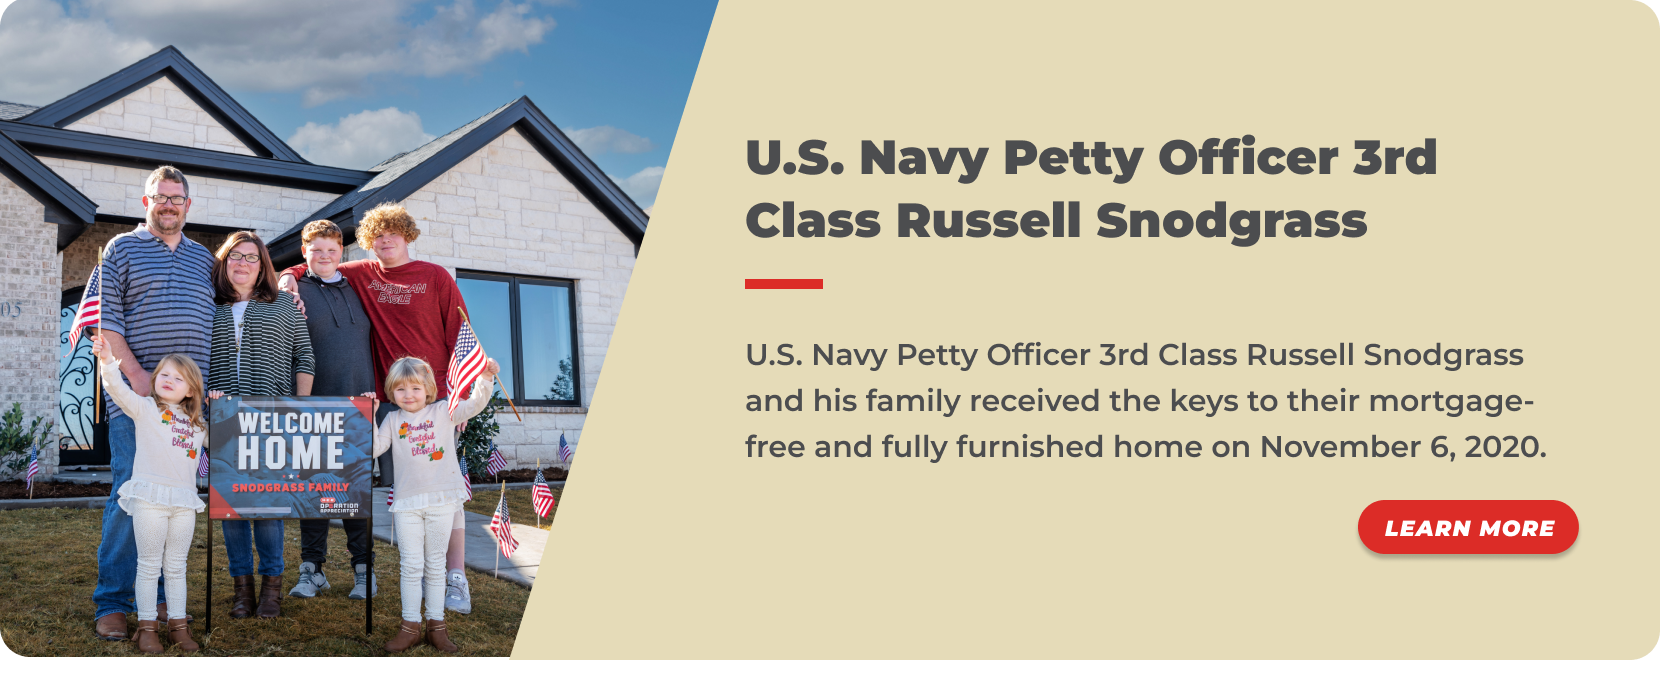 29 - U.S. Navy Petty Officer 3rd Class Russell Snodgrass